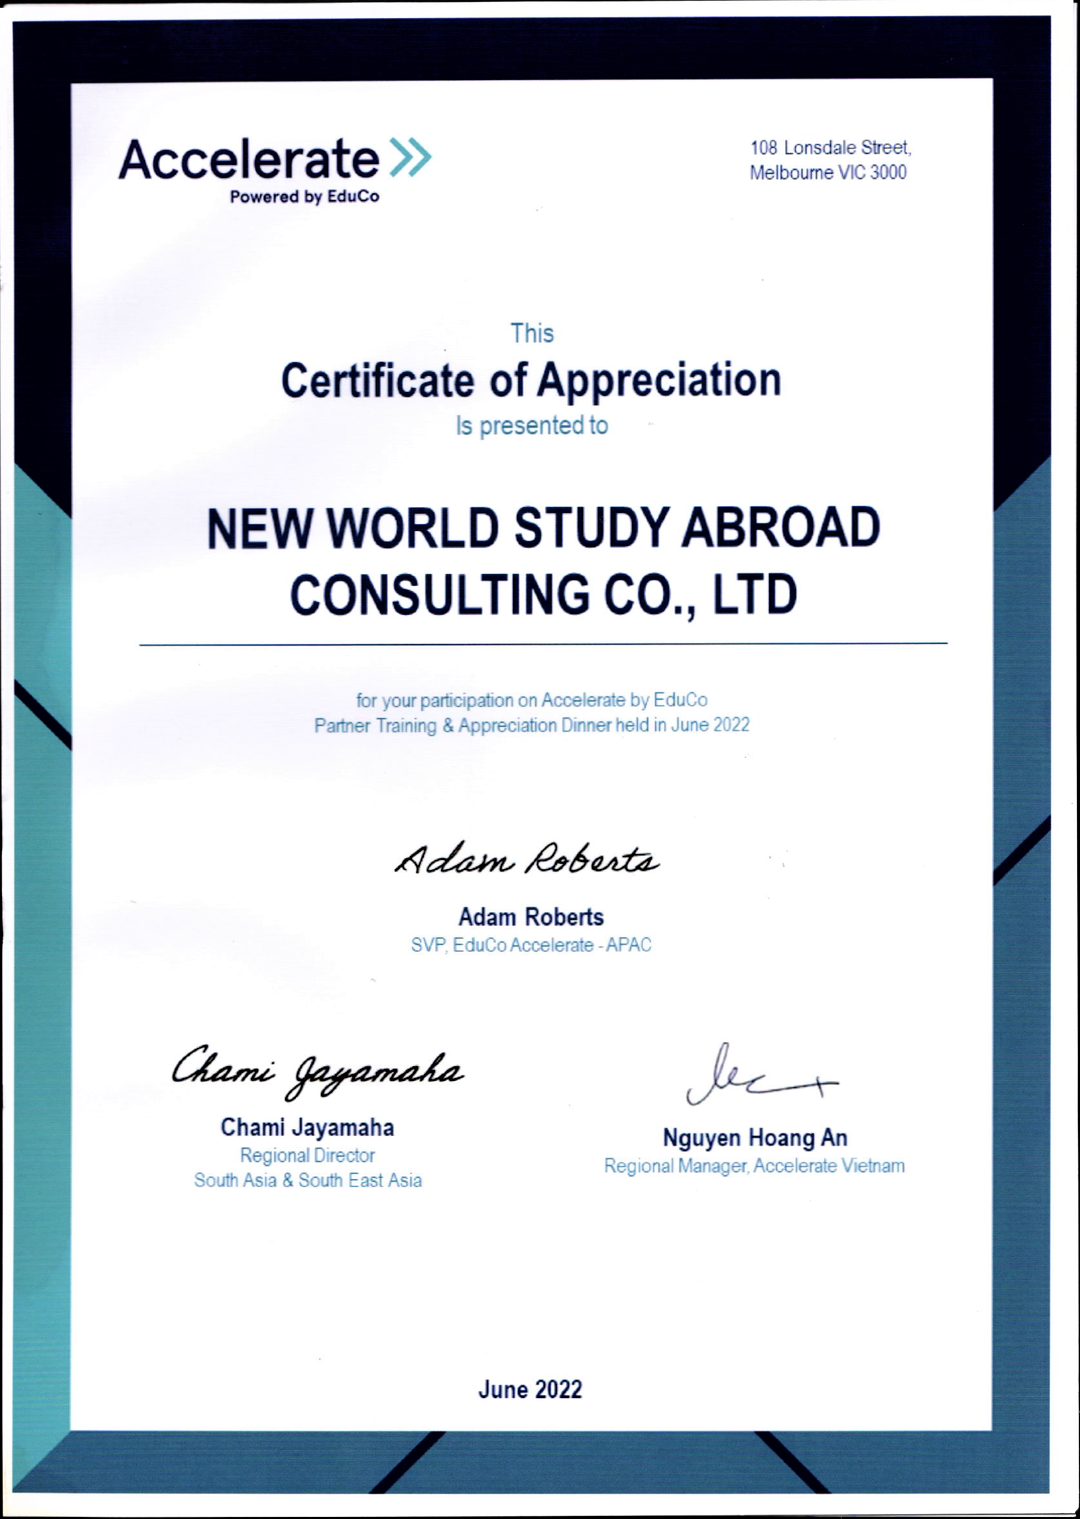 Certificate of Appreciation từ Educo Accelerate